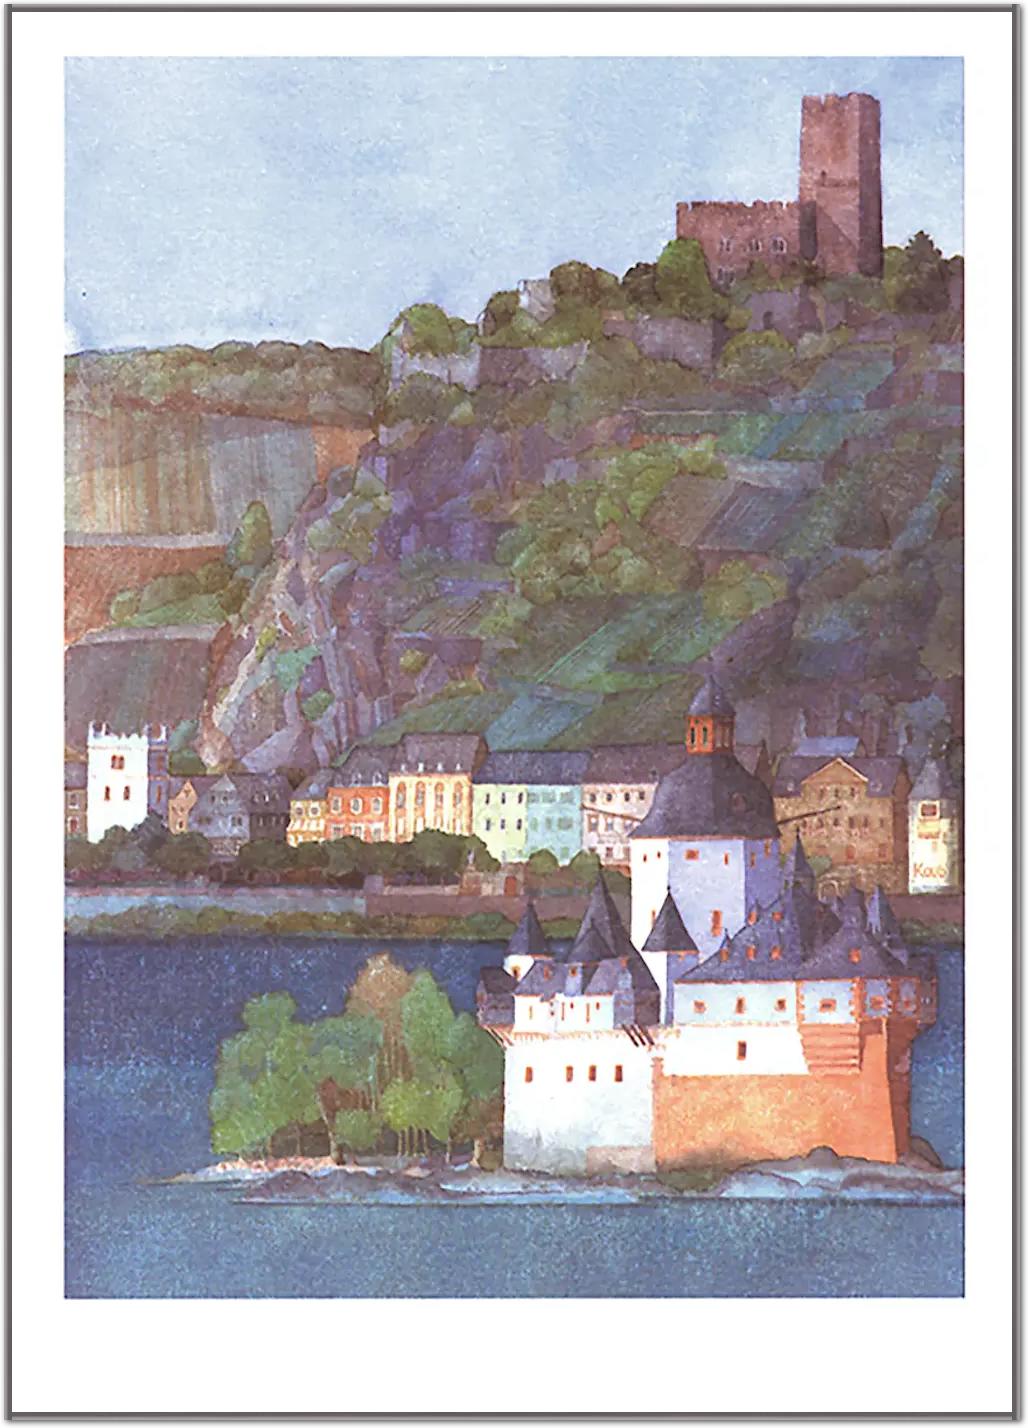 Die Pfalz bei Kaub und Burg Gutenfels, Rhein von Helga Westphal